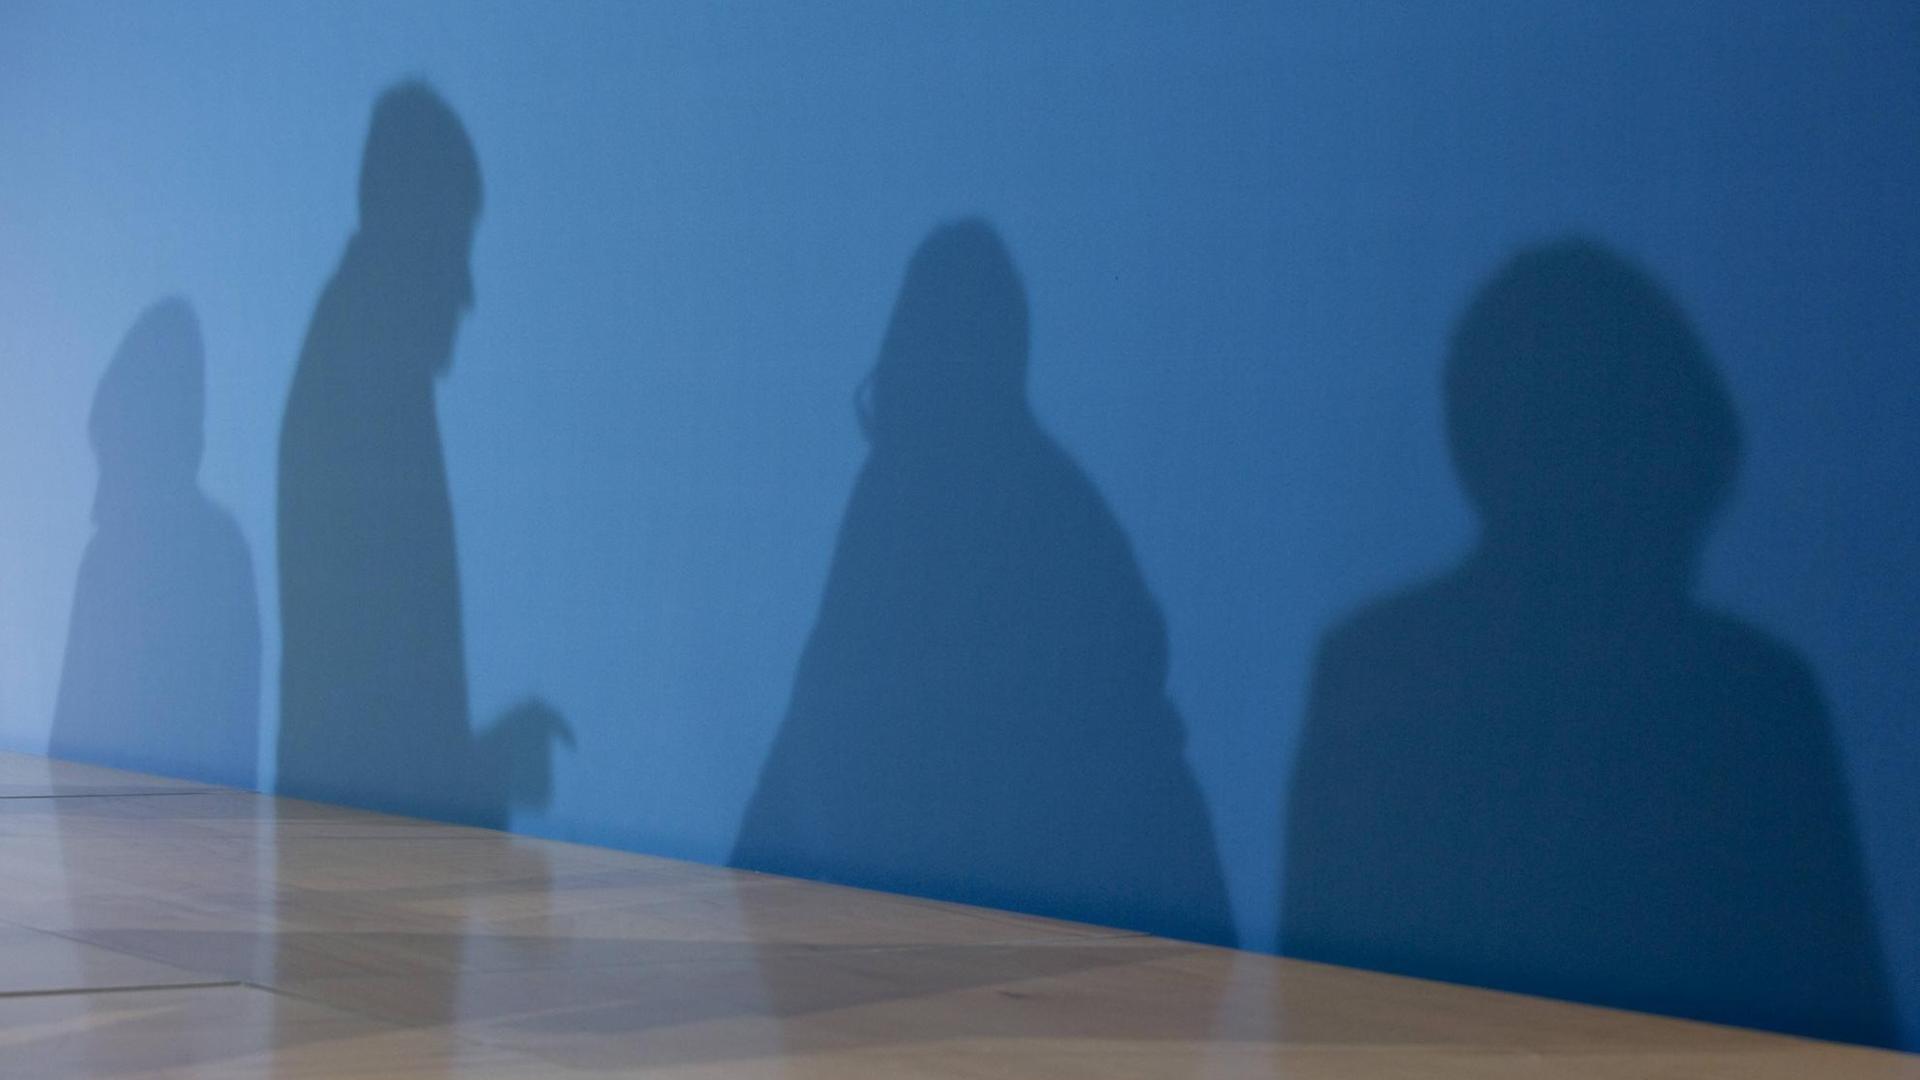 Die Schatten von Horst Seehofer, Angela Merkel und Martin Schulz auf einer blauen Wand